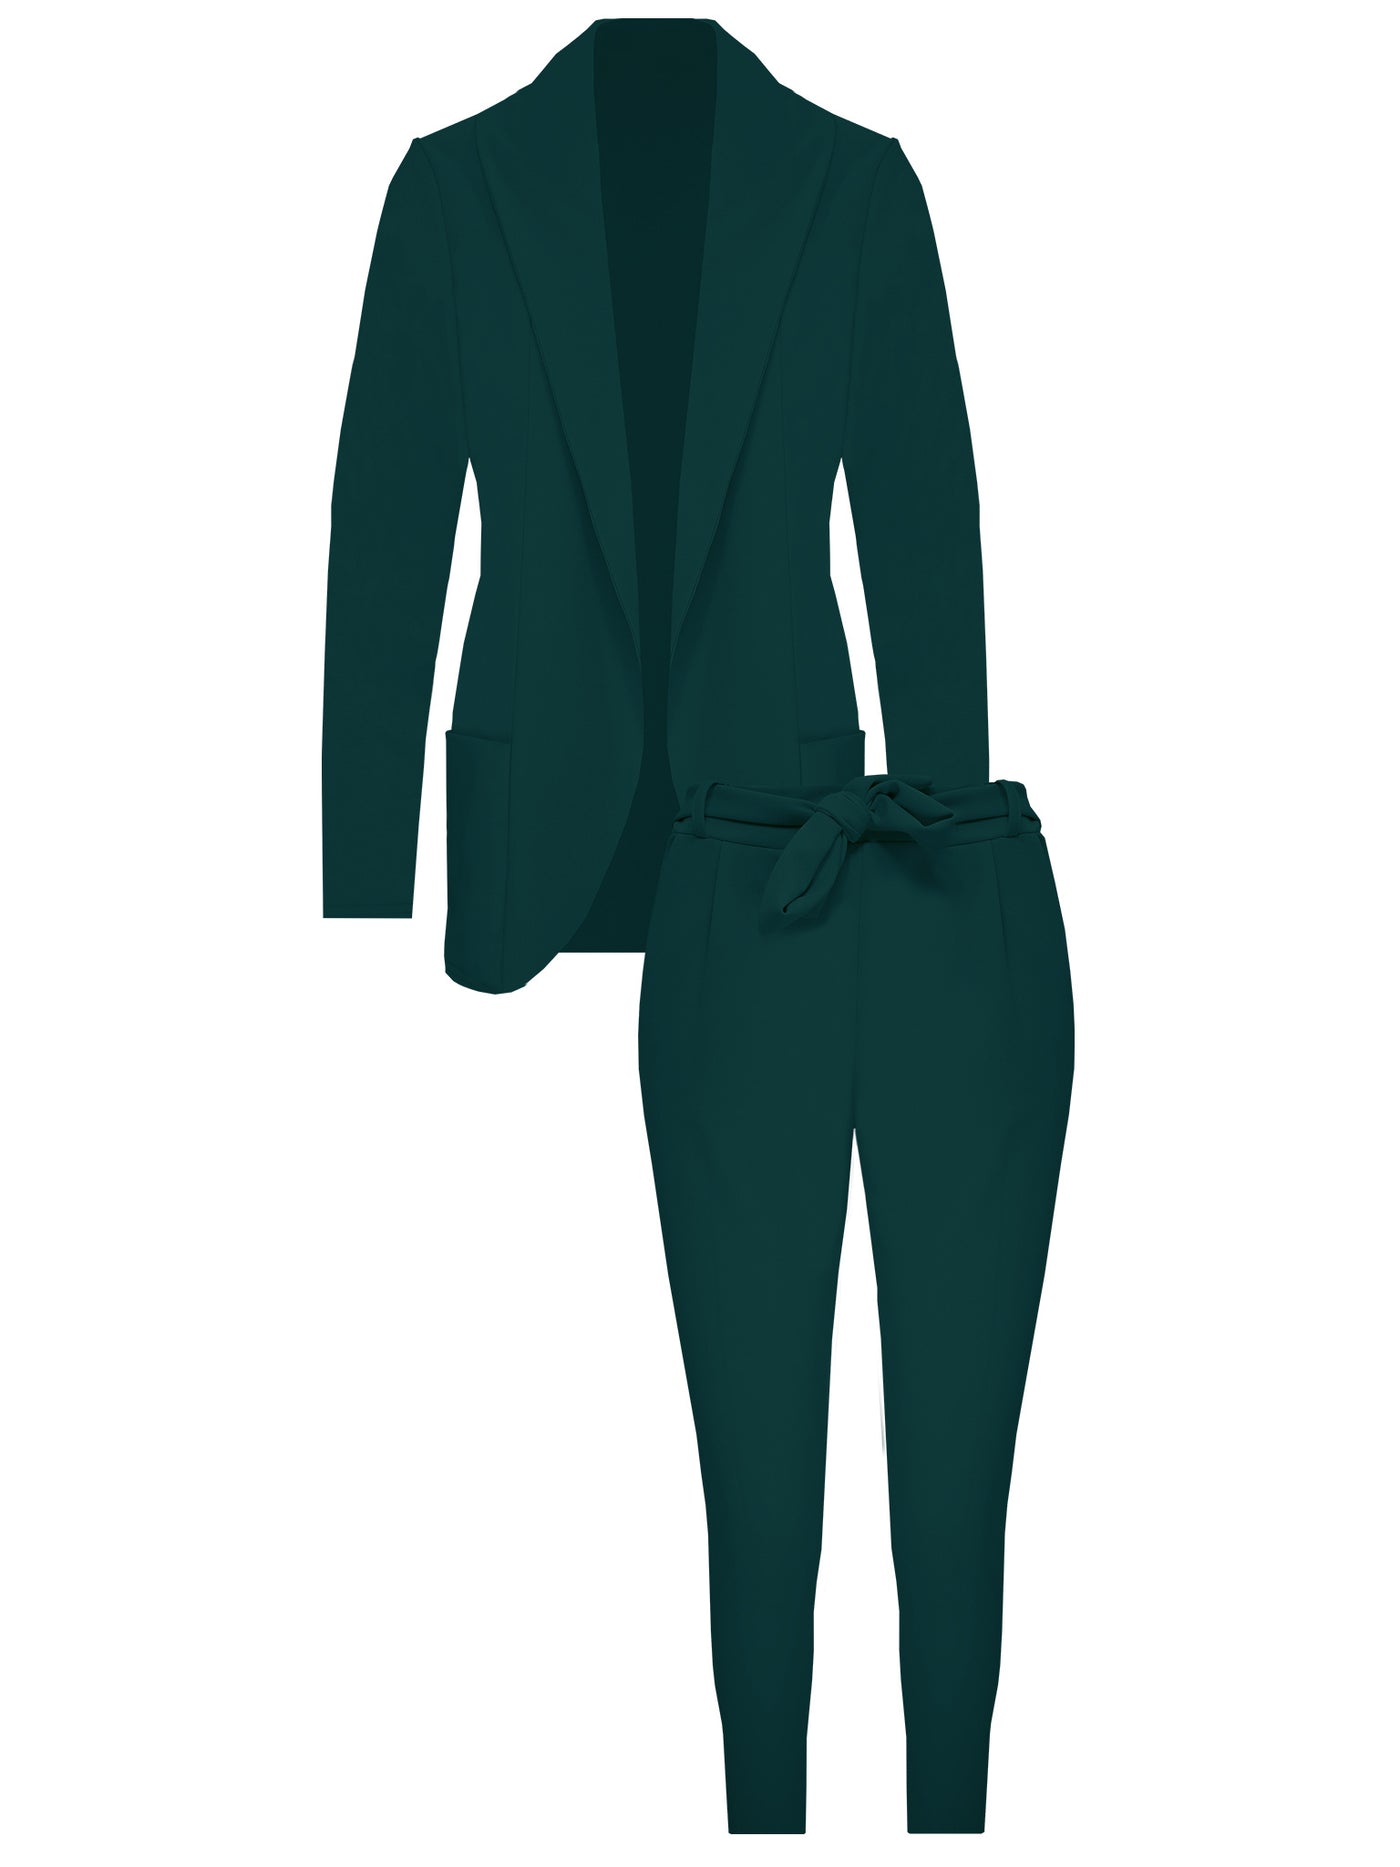 Suit Emerald